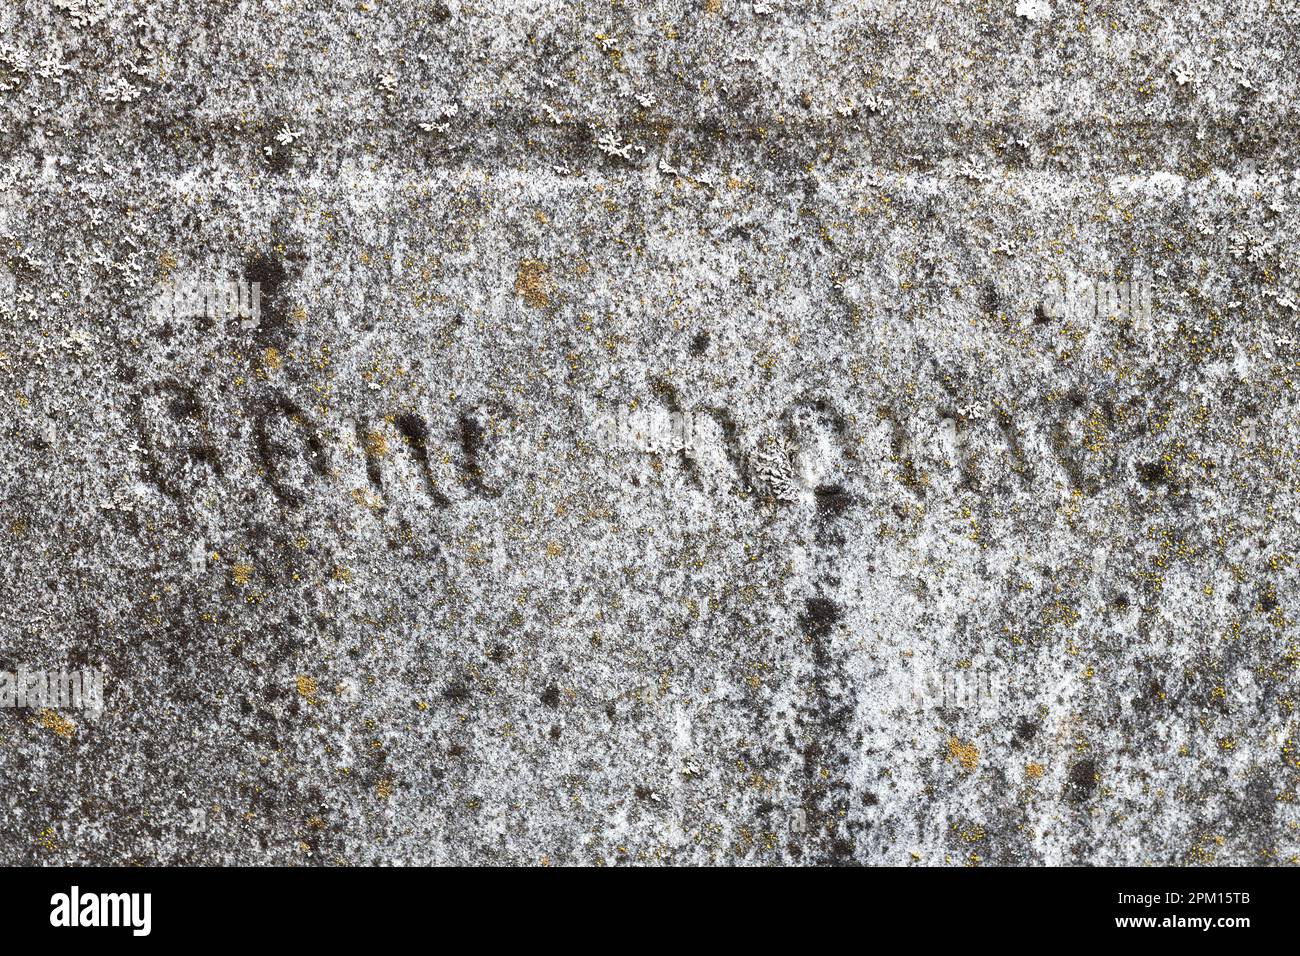 Gros plan des mots « Gone Home » gravés sur une vieille pierre tombale. Banque D'Images